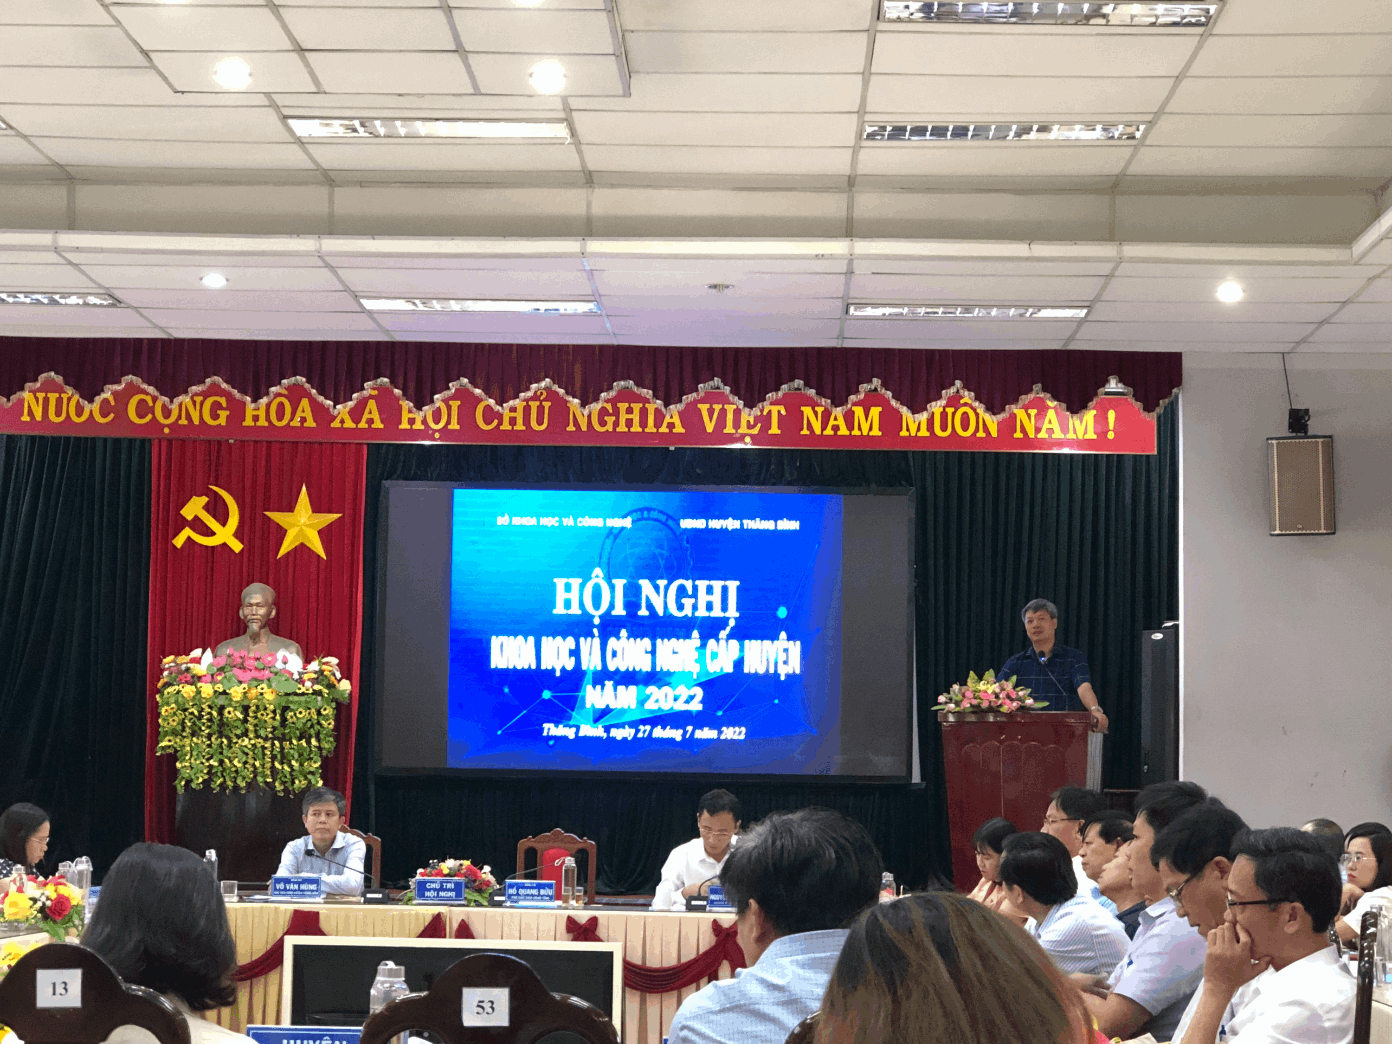 Ông Hồ Quang Bửu, Phó Chủ tịch UBND tỉnh Quảng Nam phát biểu chỉ đạo tại Hội nghị (nguồn:  https://skhcn.quangnam.gov.vn/)